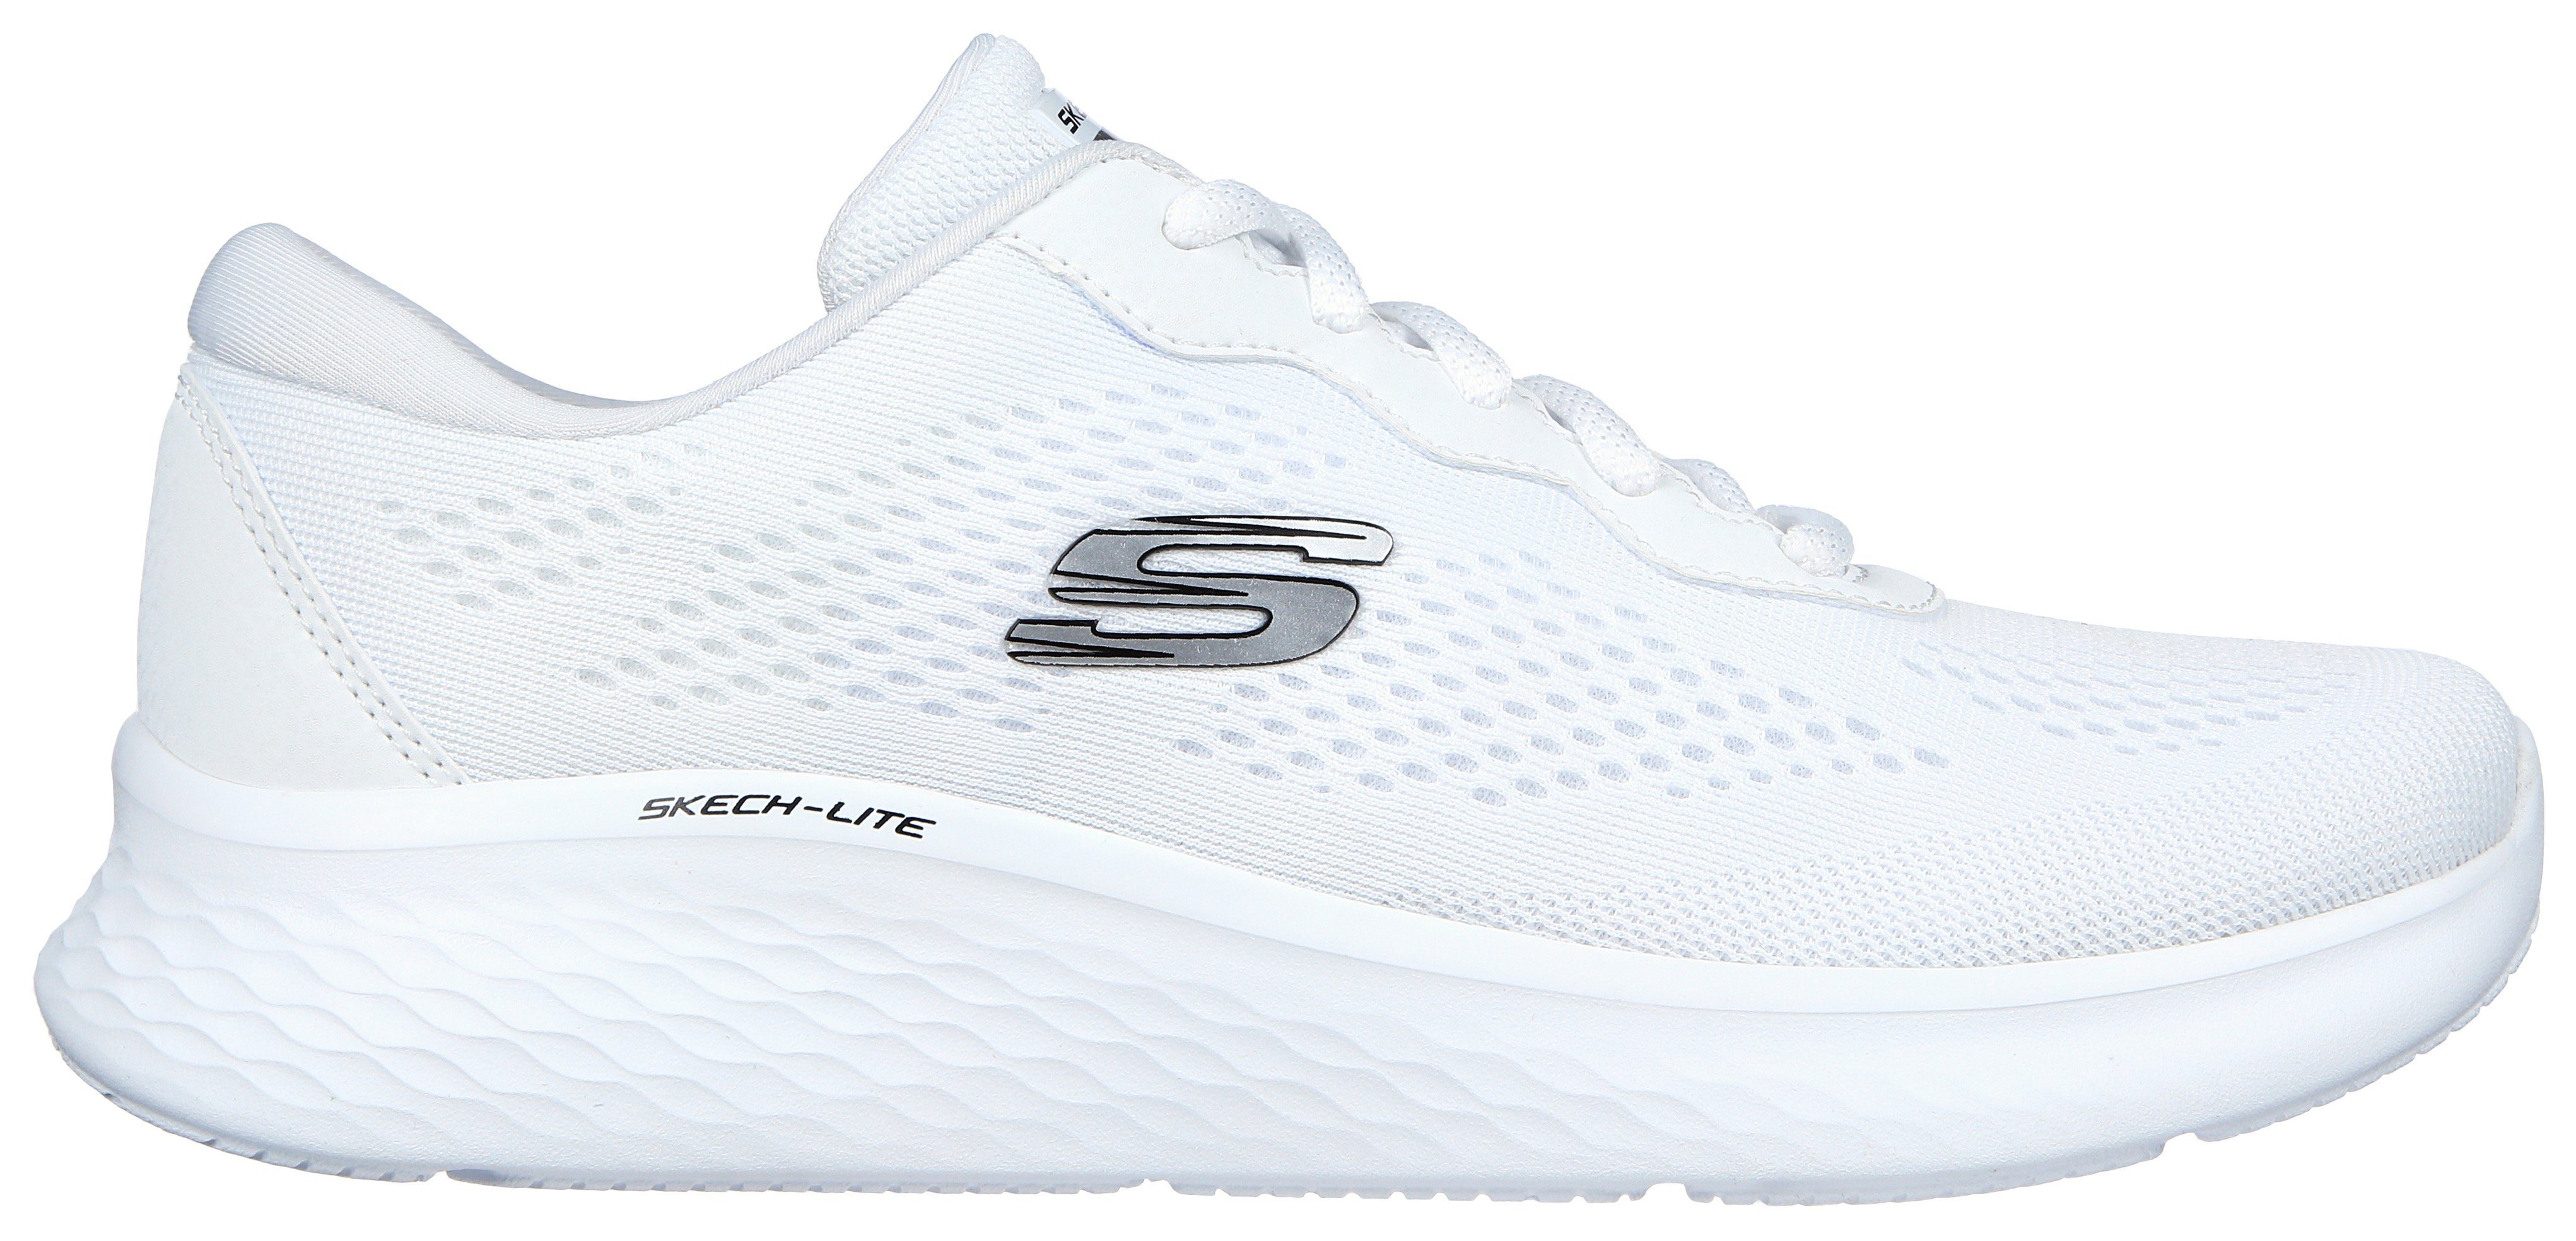 Maschinenwäsche Skechers für Sneaker SKECH-LITE geeignet weiß-pink - PRO